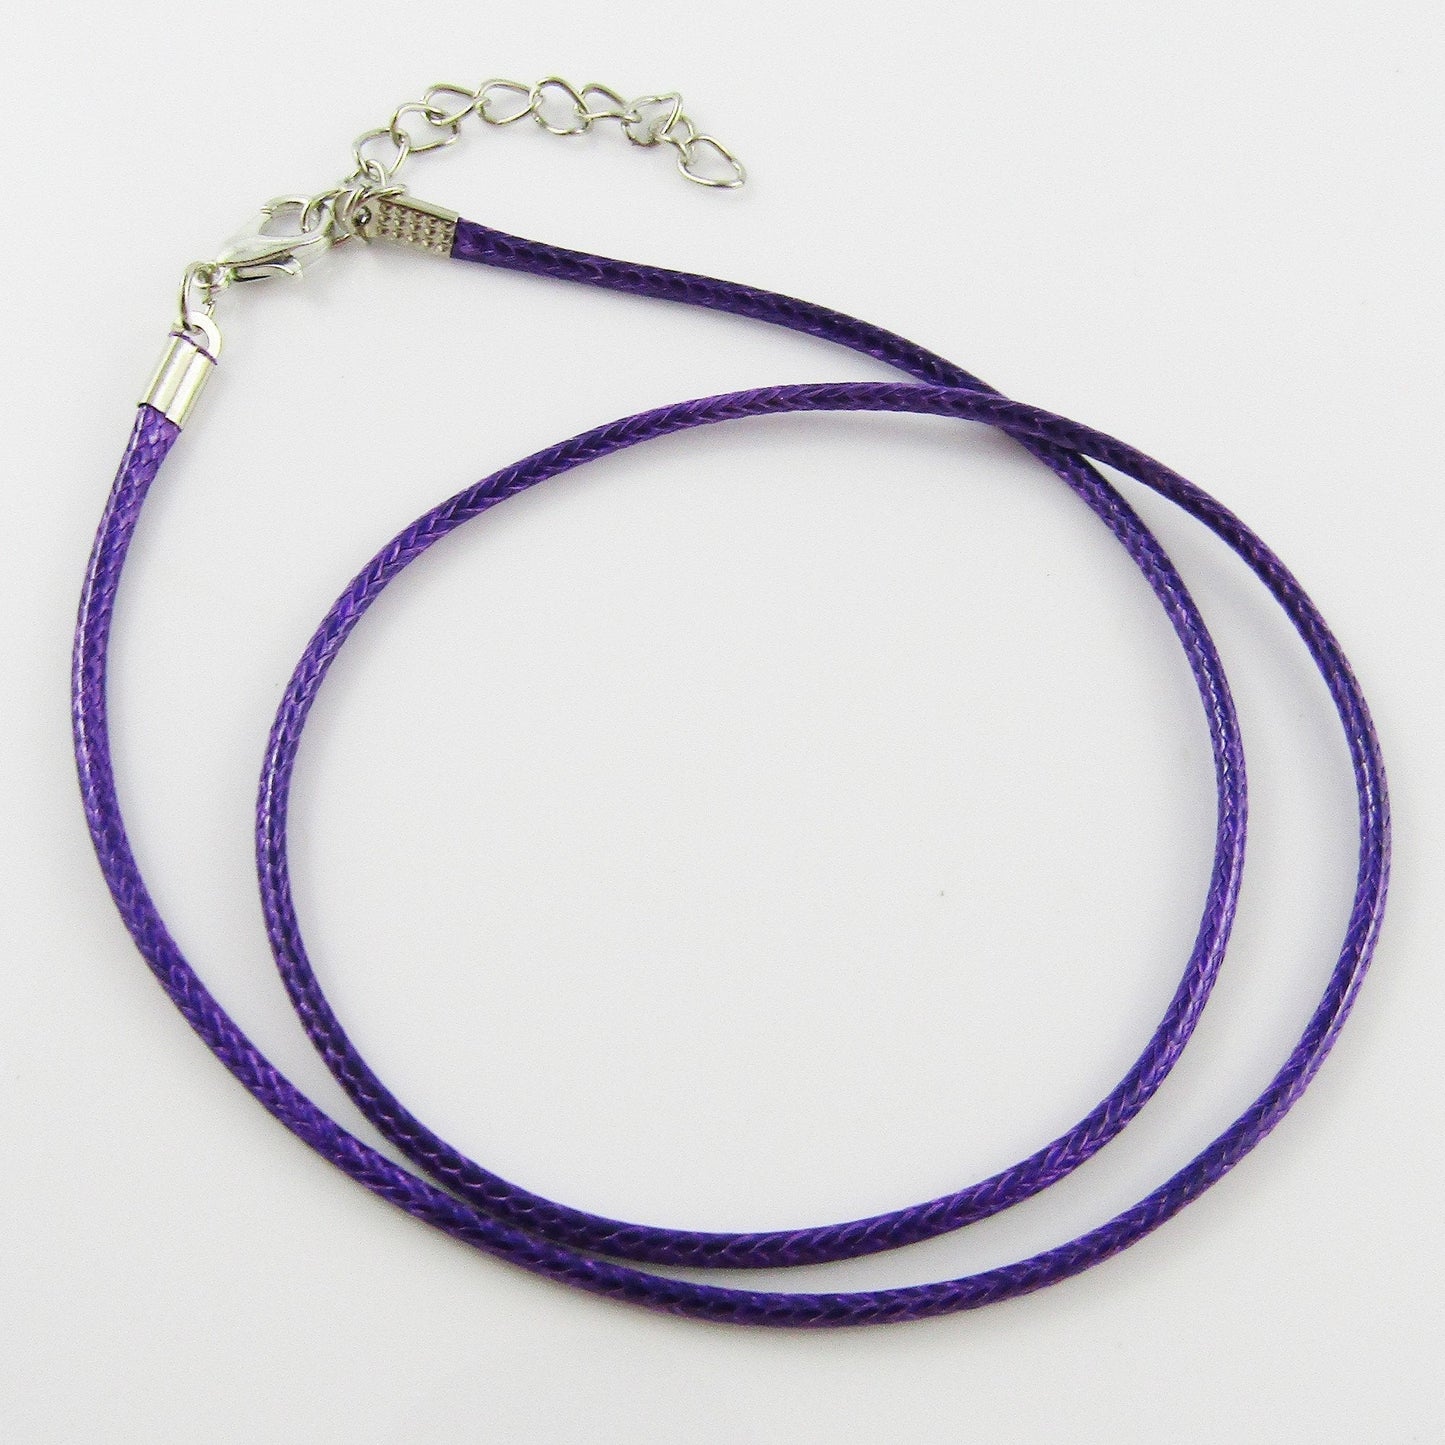 Bulk Pack 10pcs 2mm Purple Cord Necklace 44cm with 5cm Extender